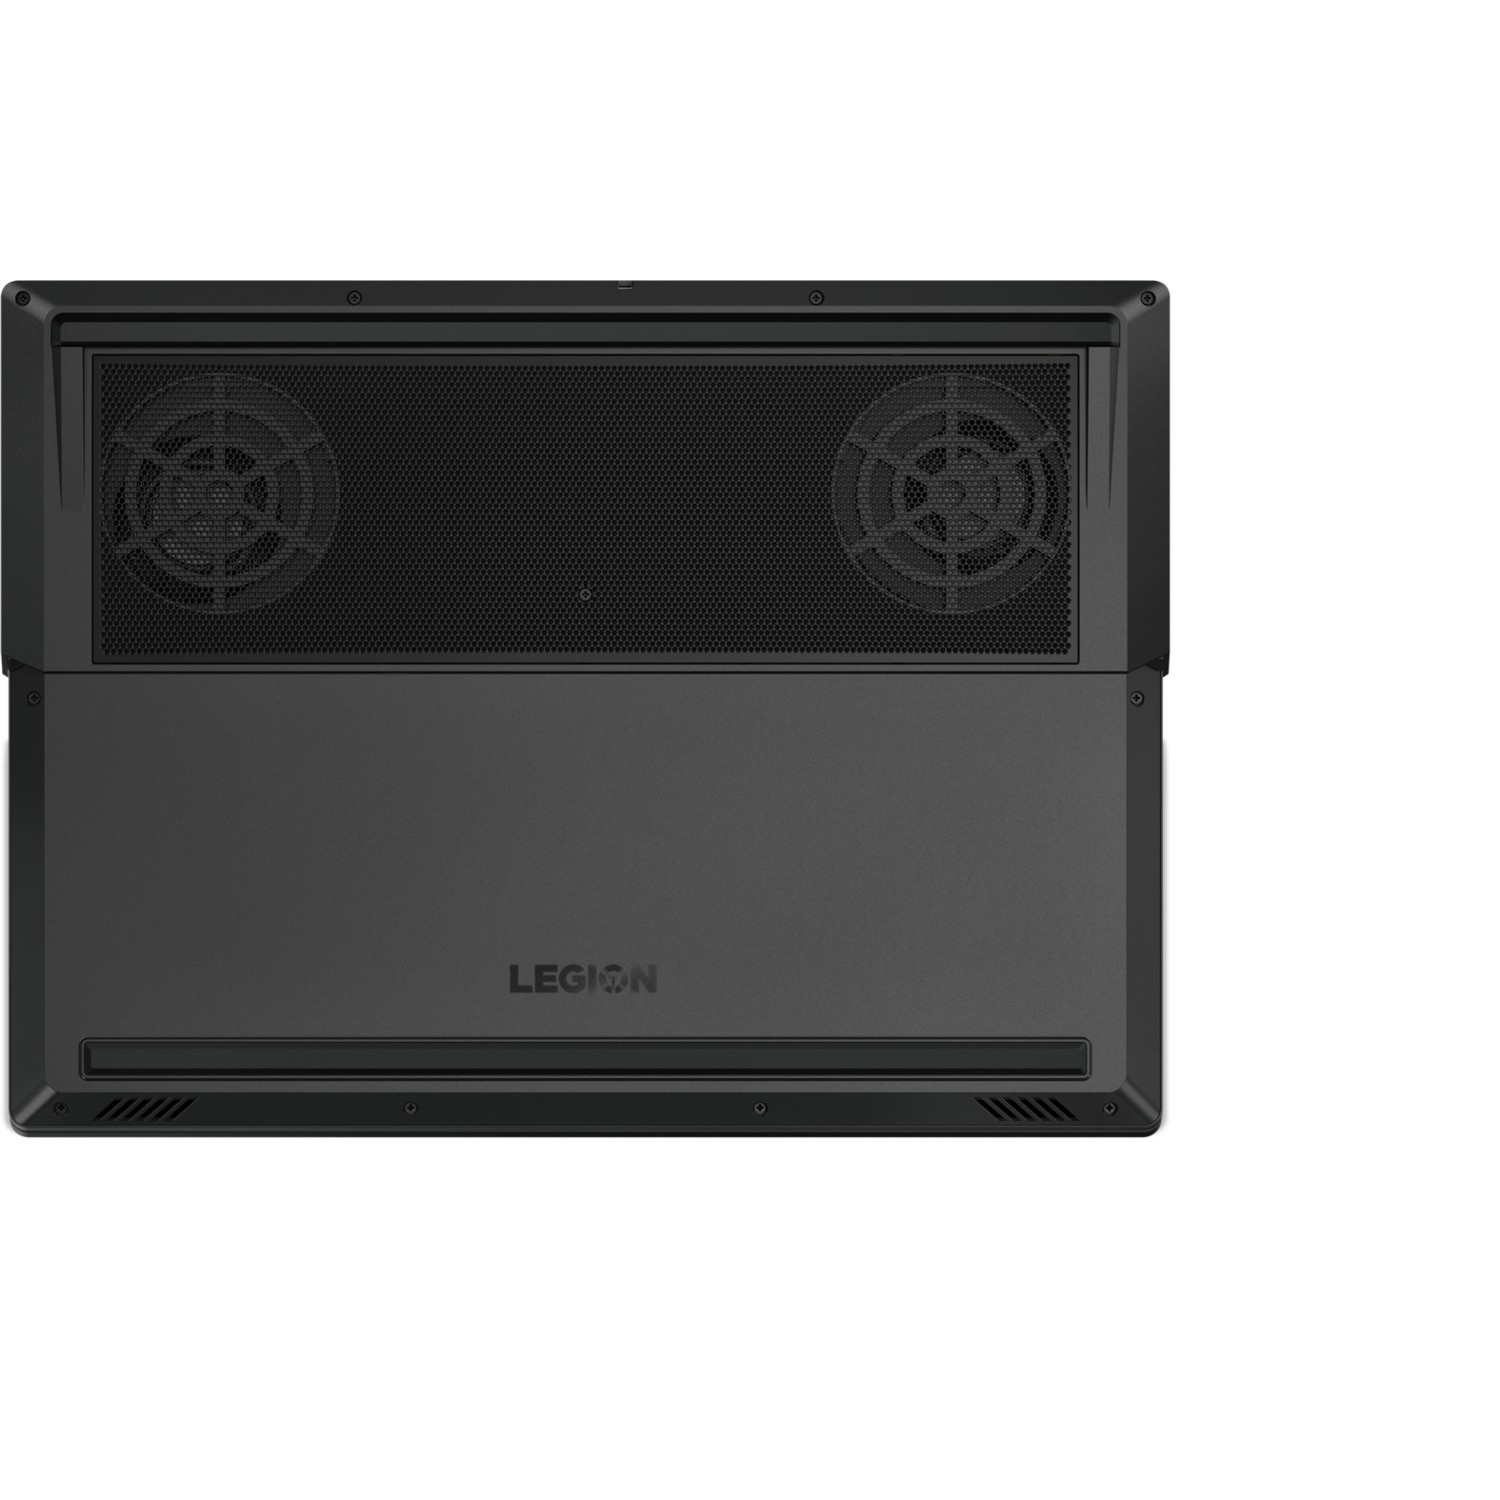 LENOVO LEGION Y530 81FV00B9TX I7-8750H 16GB 256GB SSD 1TB 4GB GTX1050 15.6" FHD WIN10 NOTEBOOK